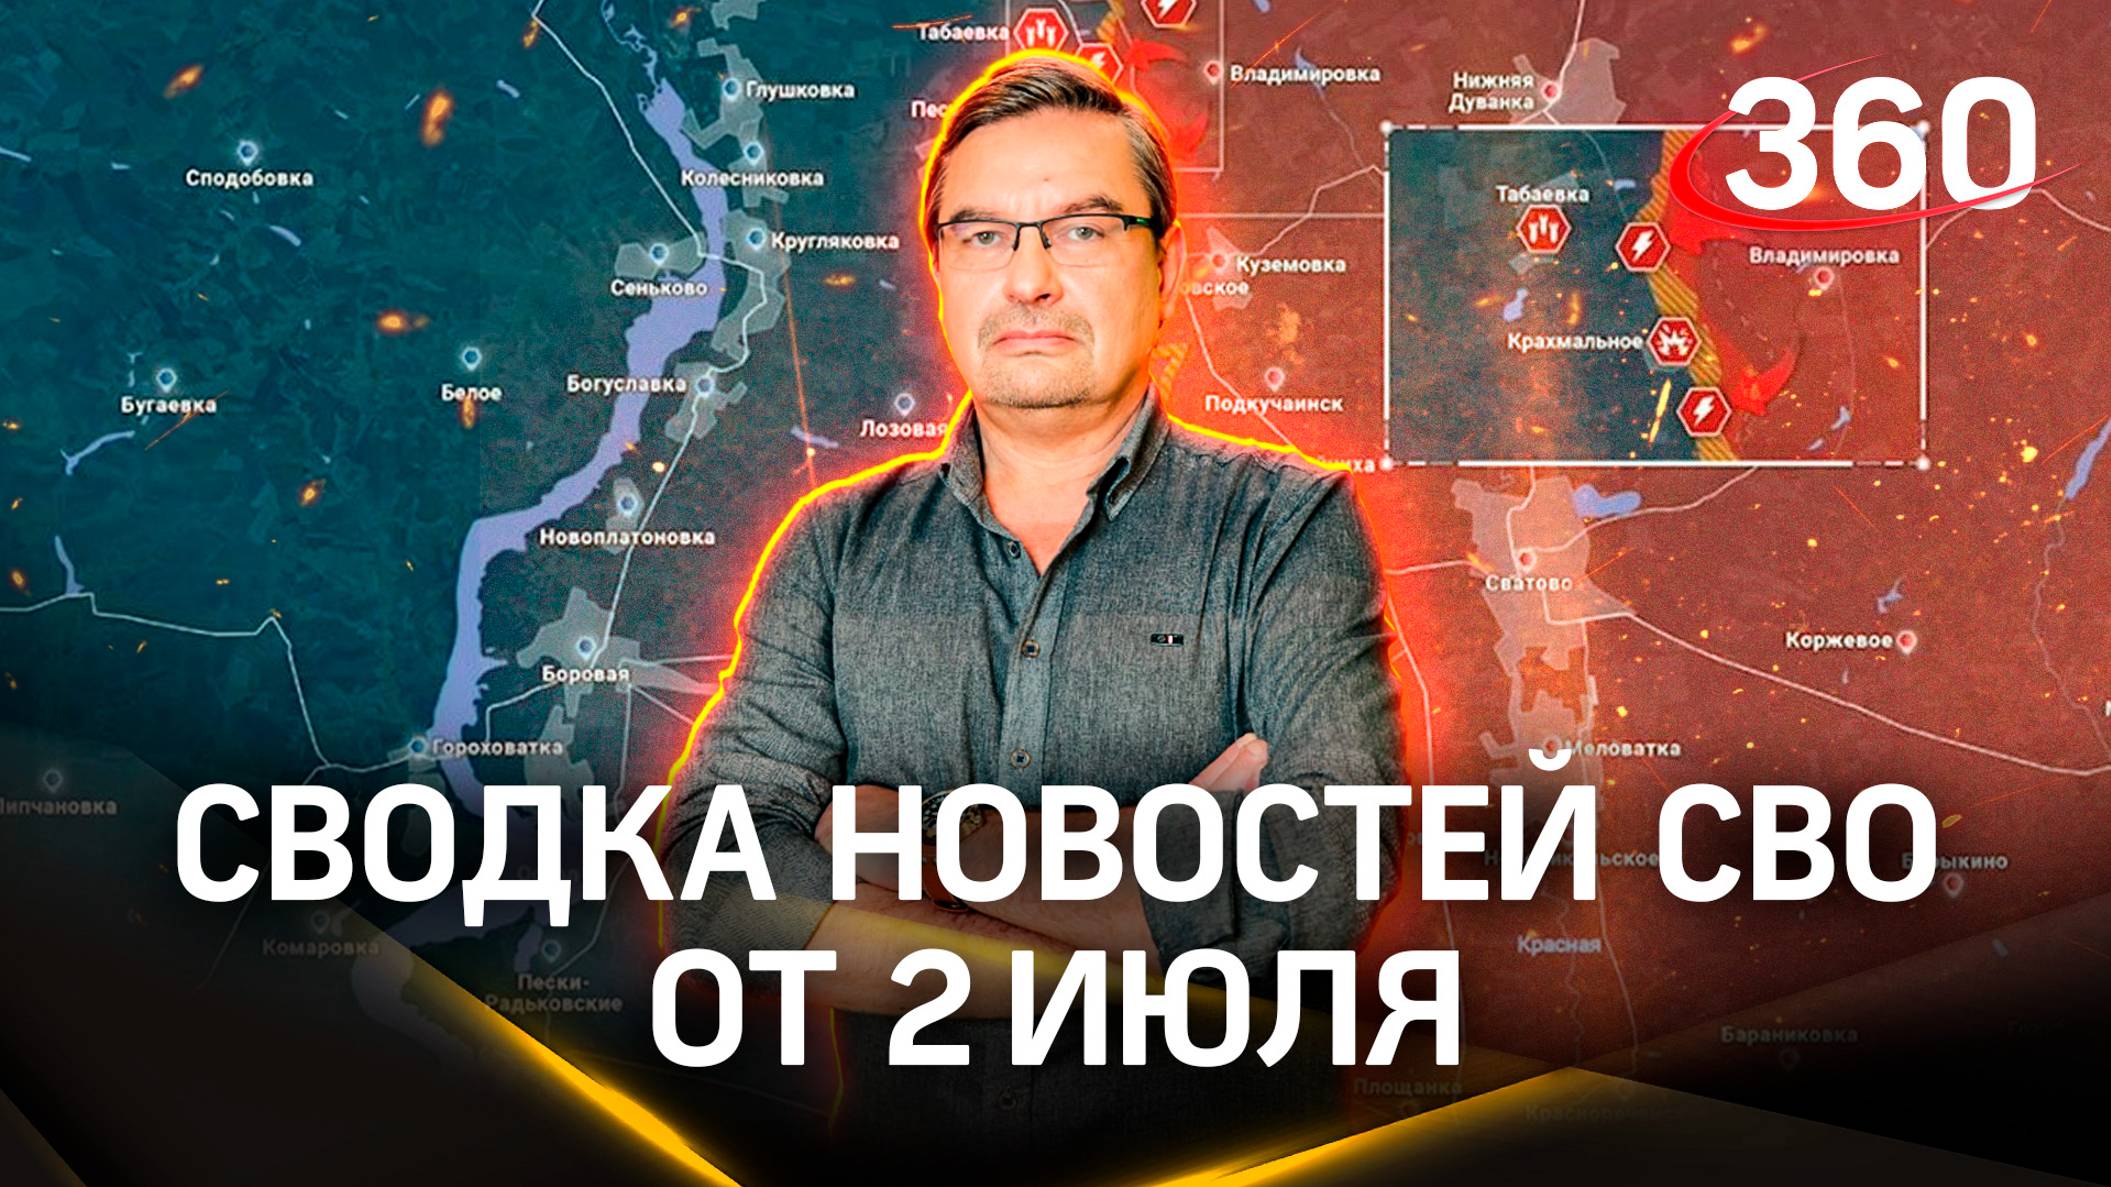 Михаил Онуфриенко: «Наши продвигаются вперед». Последняя сводка новостей СВО от 2 июля